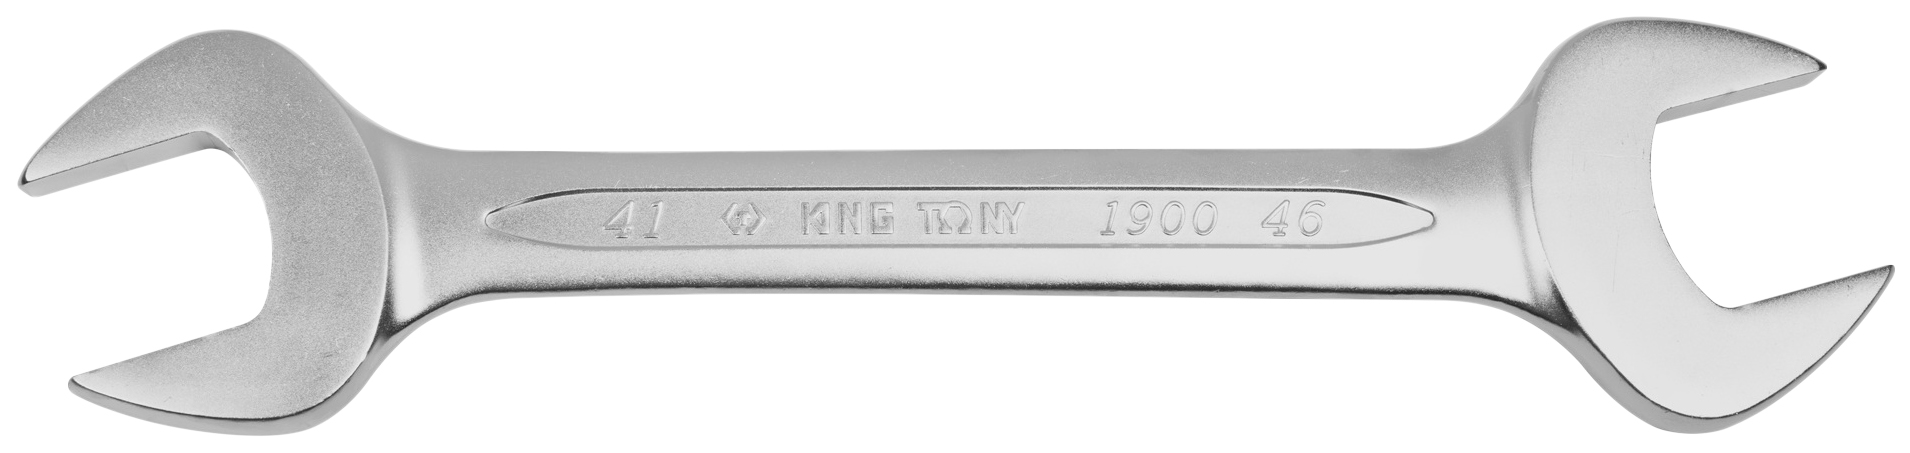 Рожковый ключ KING TONY 19004146 рожковый силовой ключ king tony